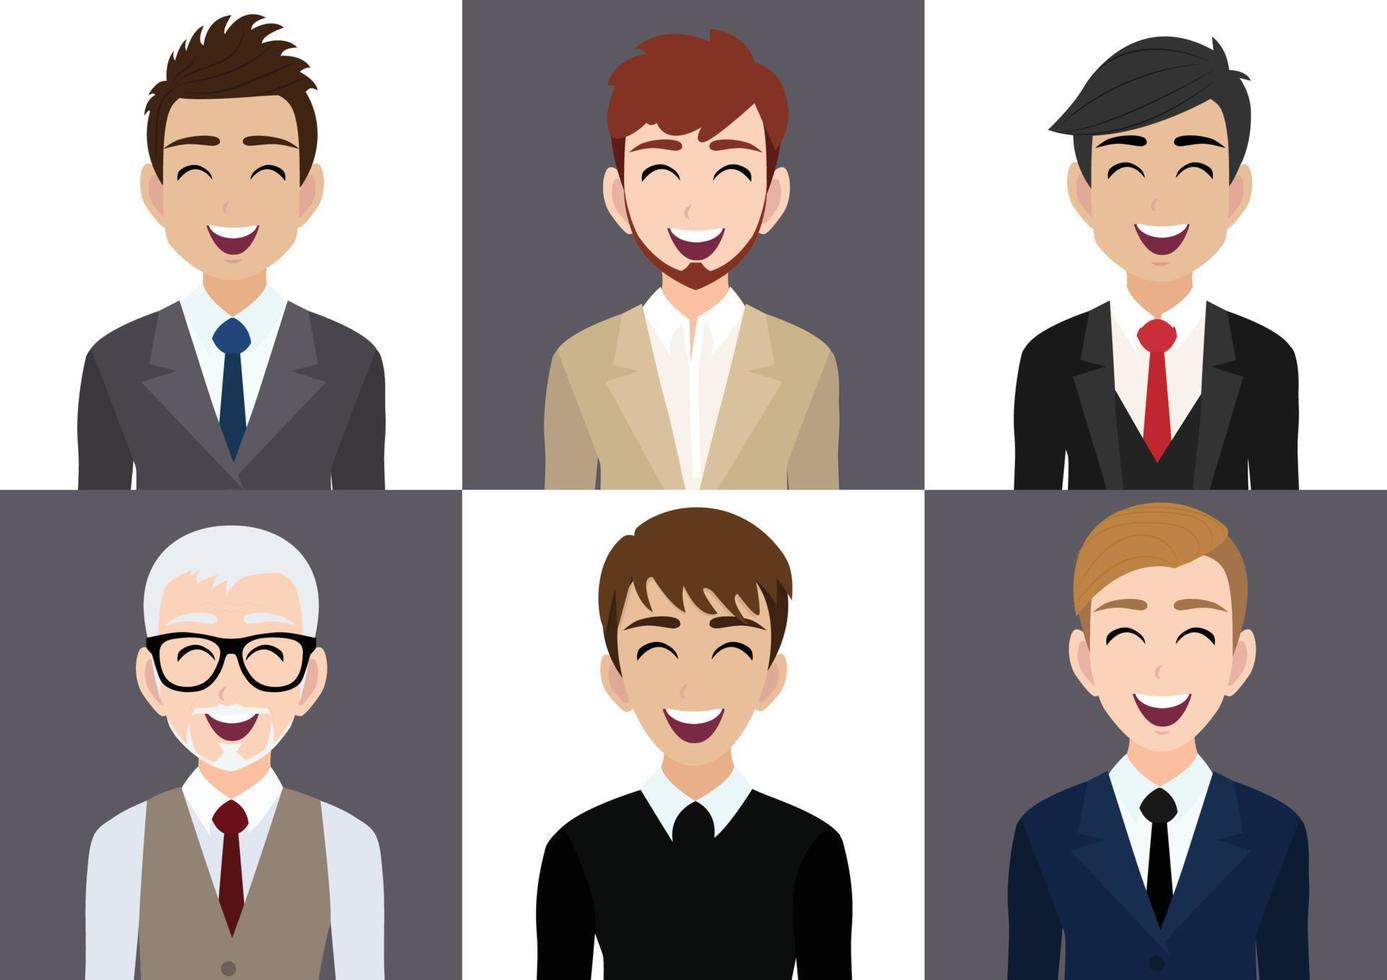 lugar de trabajo feliz con el personaje de dibujos animados de hombres sonrientes en el vector de diseño de ropa de oficina